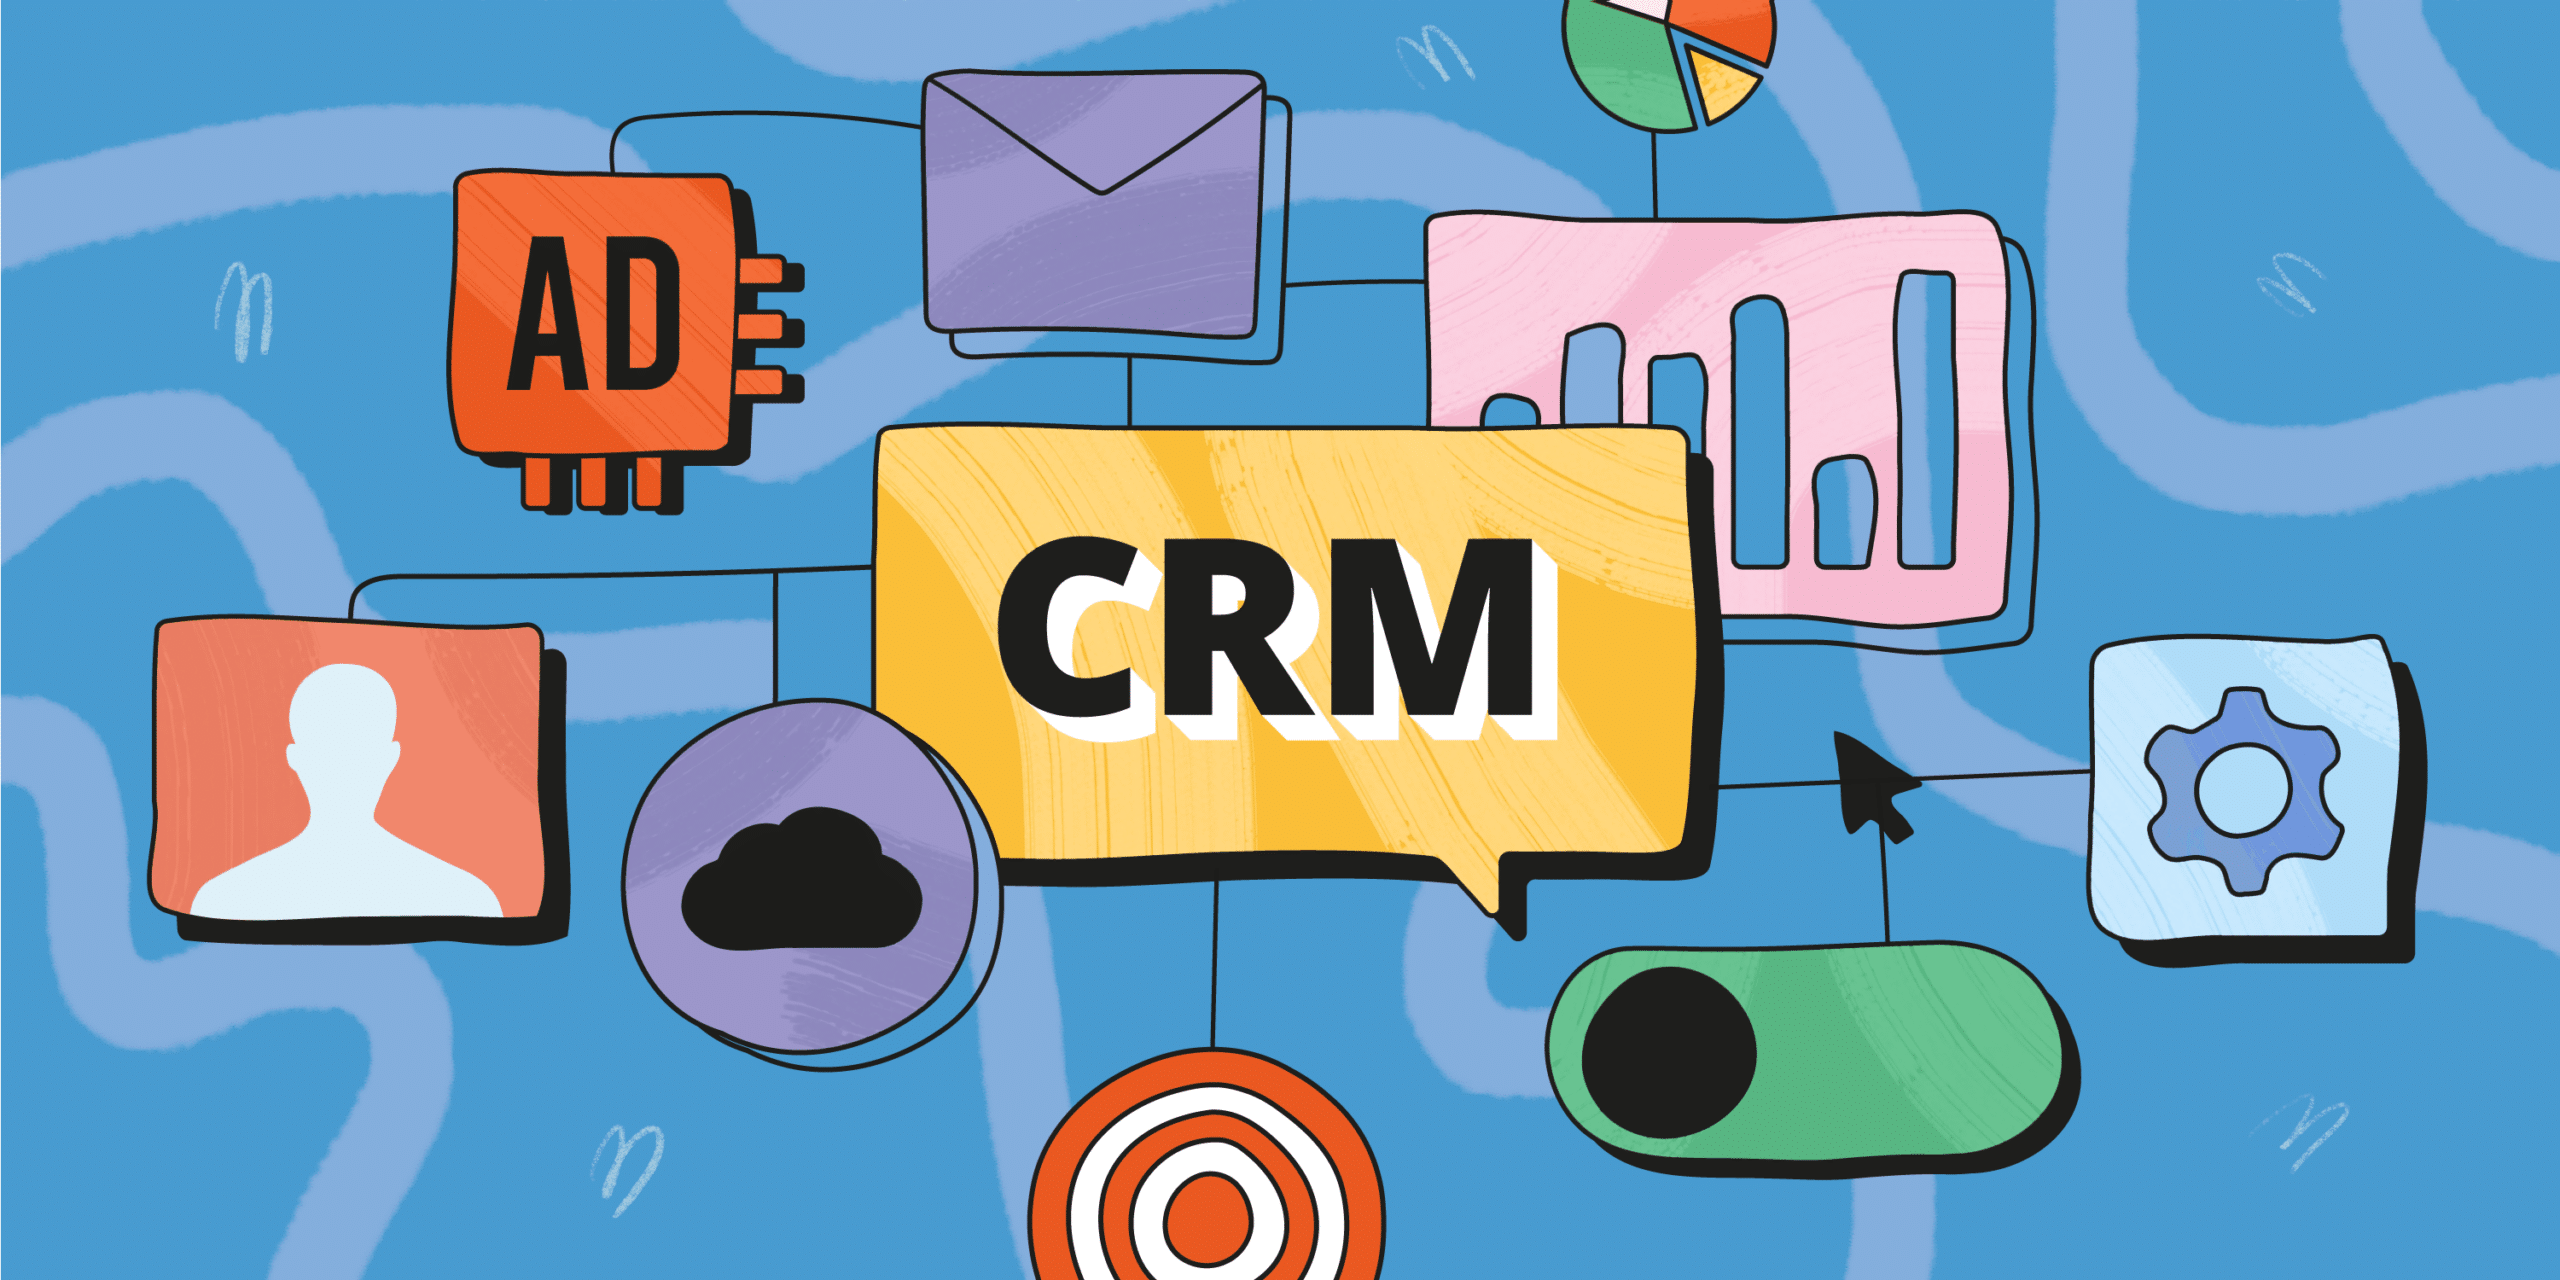 Aprenda a montar um CRM de vendas eficaz: defina objetivos, escolha ferramentas e melhore o relacionamento com clientes.